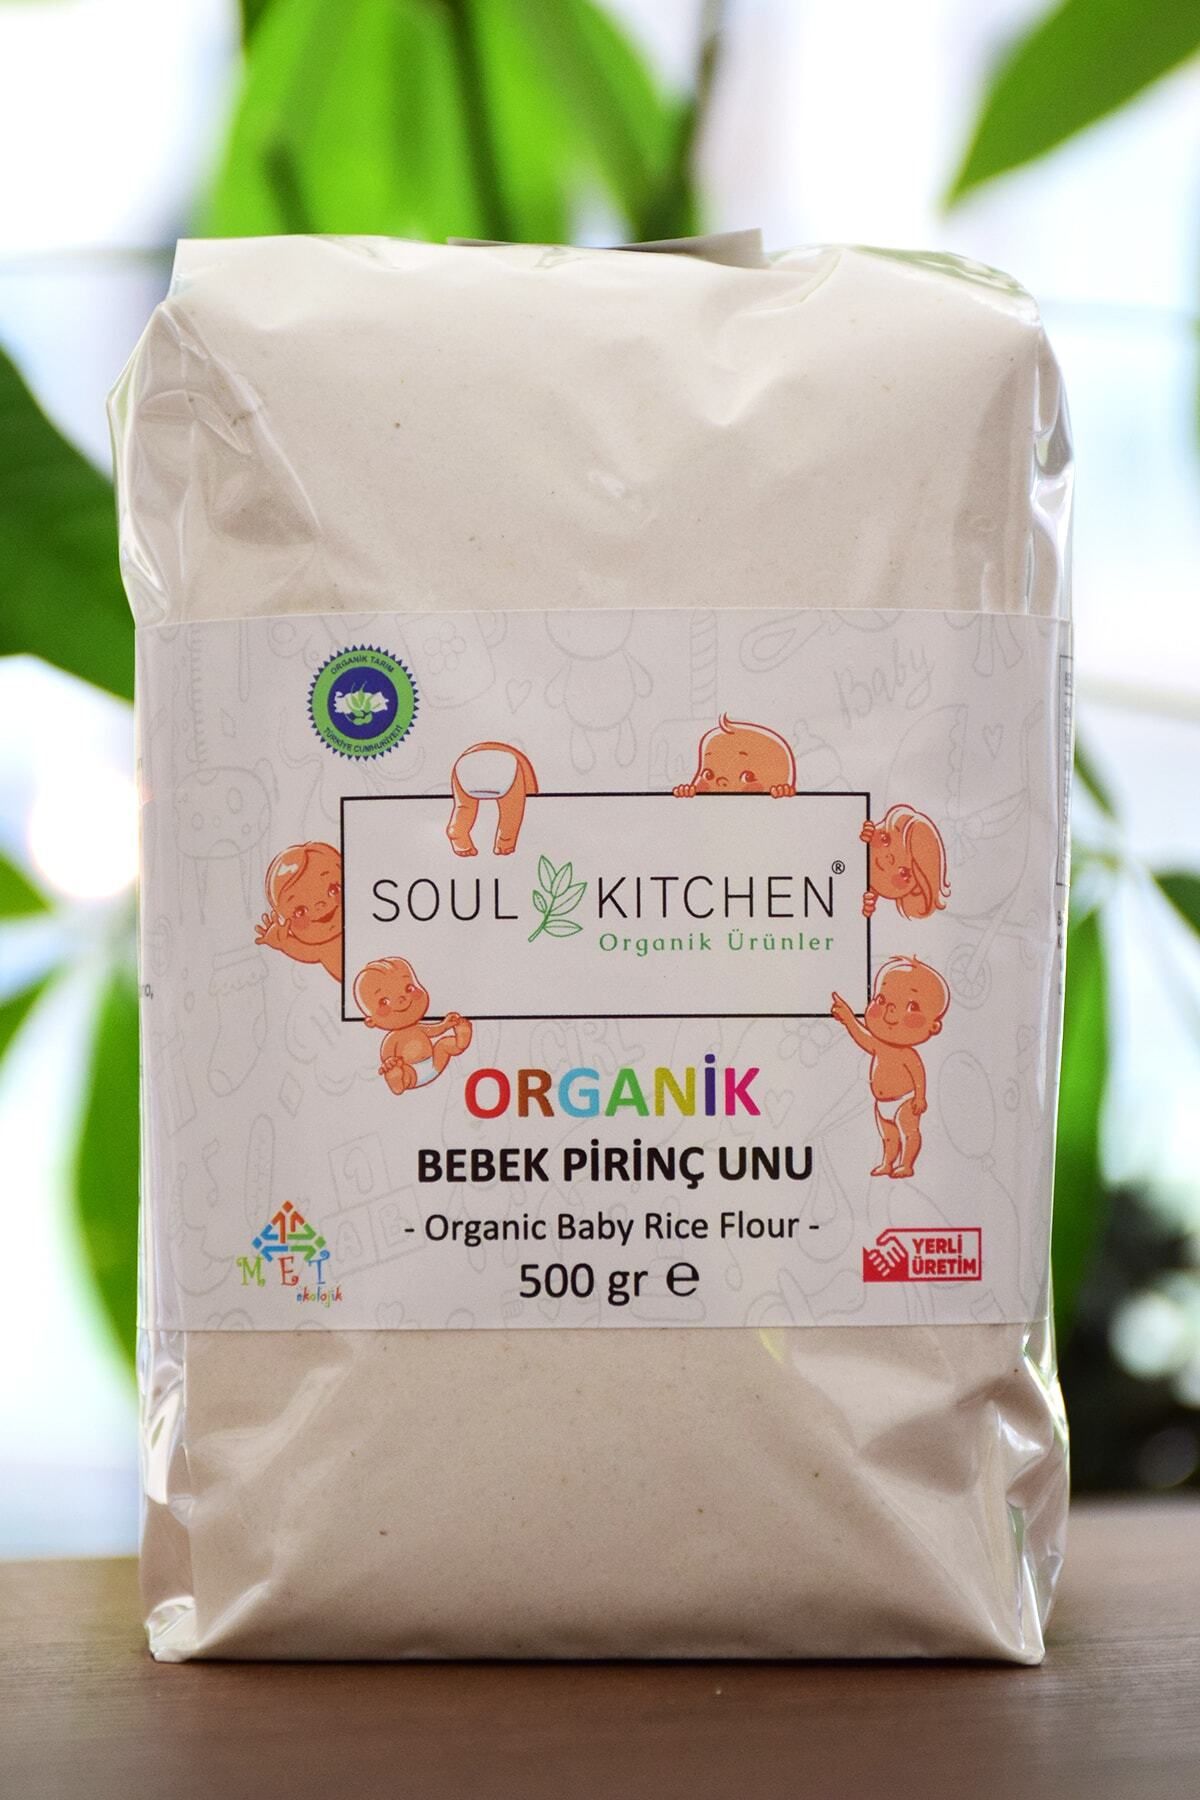 Soul Kitchen Organik Ürünler Organik Bebek Pirinç Unu 500gr